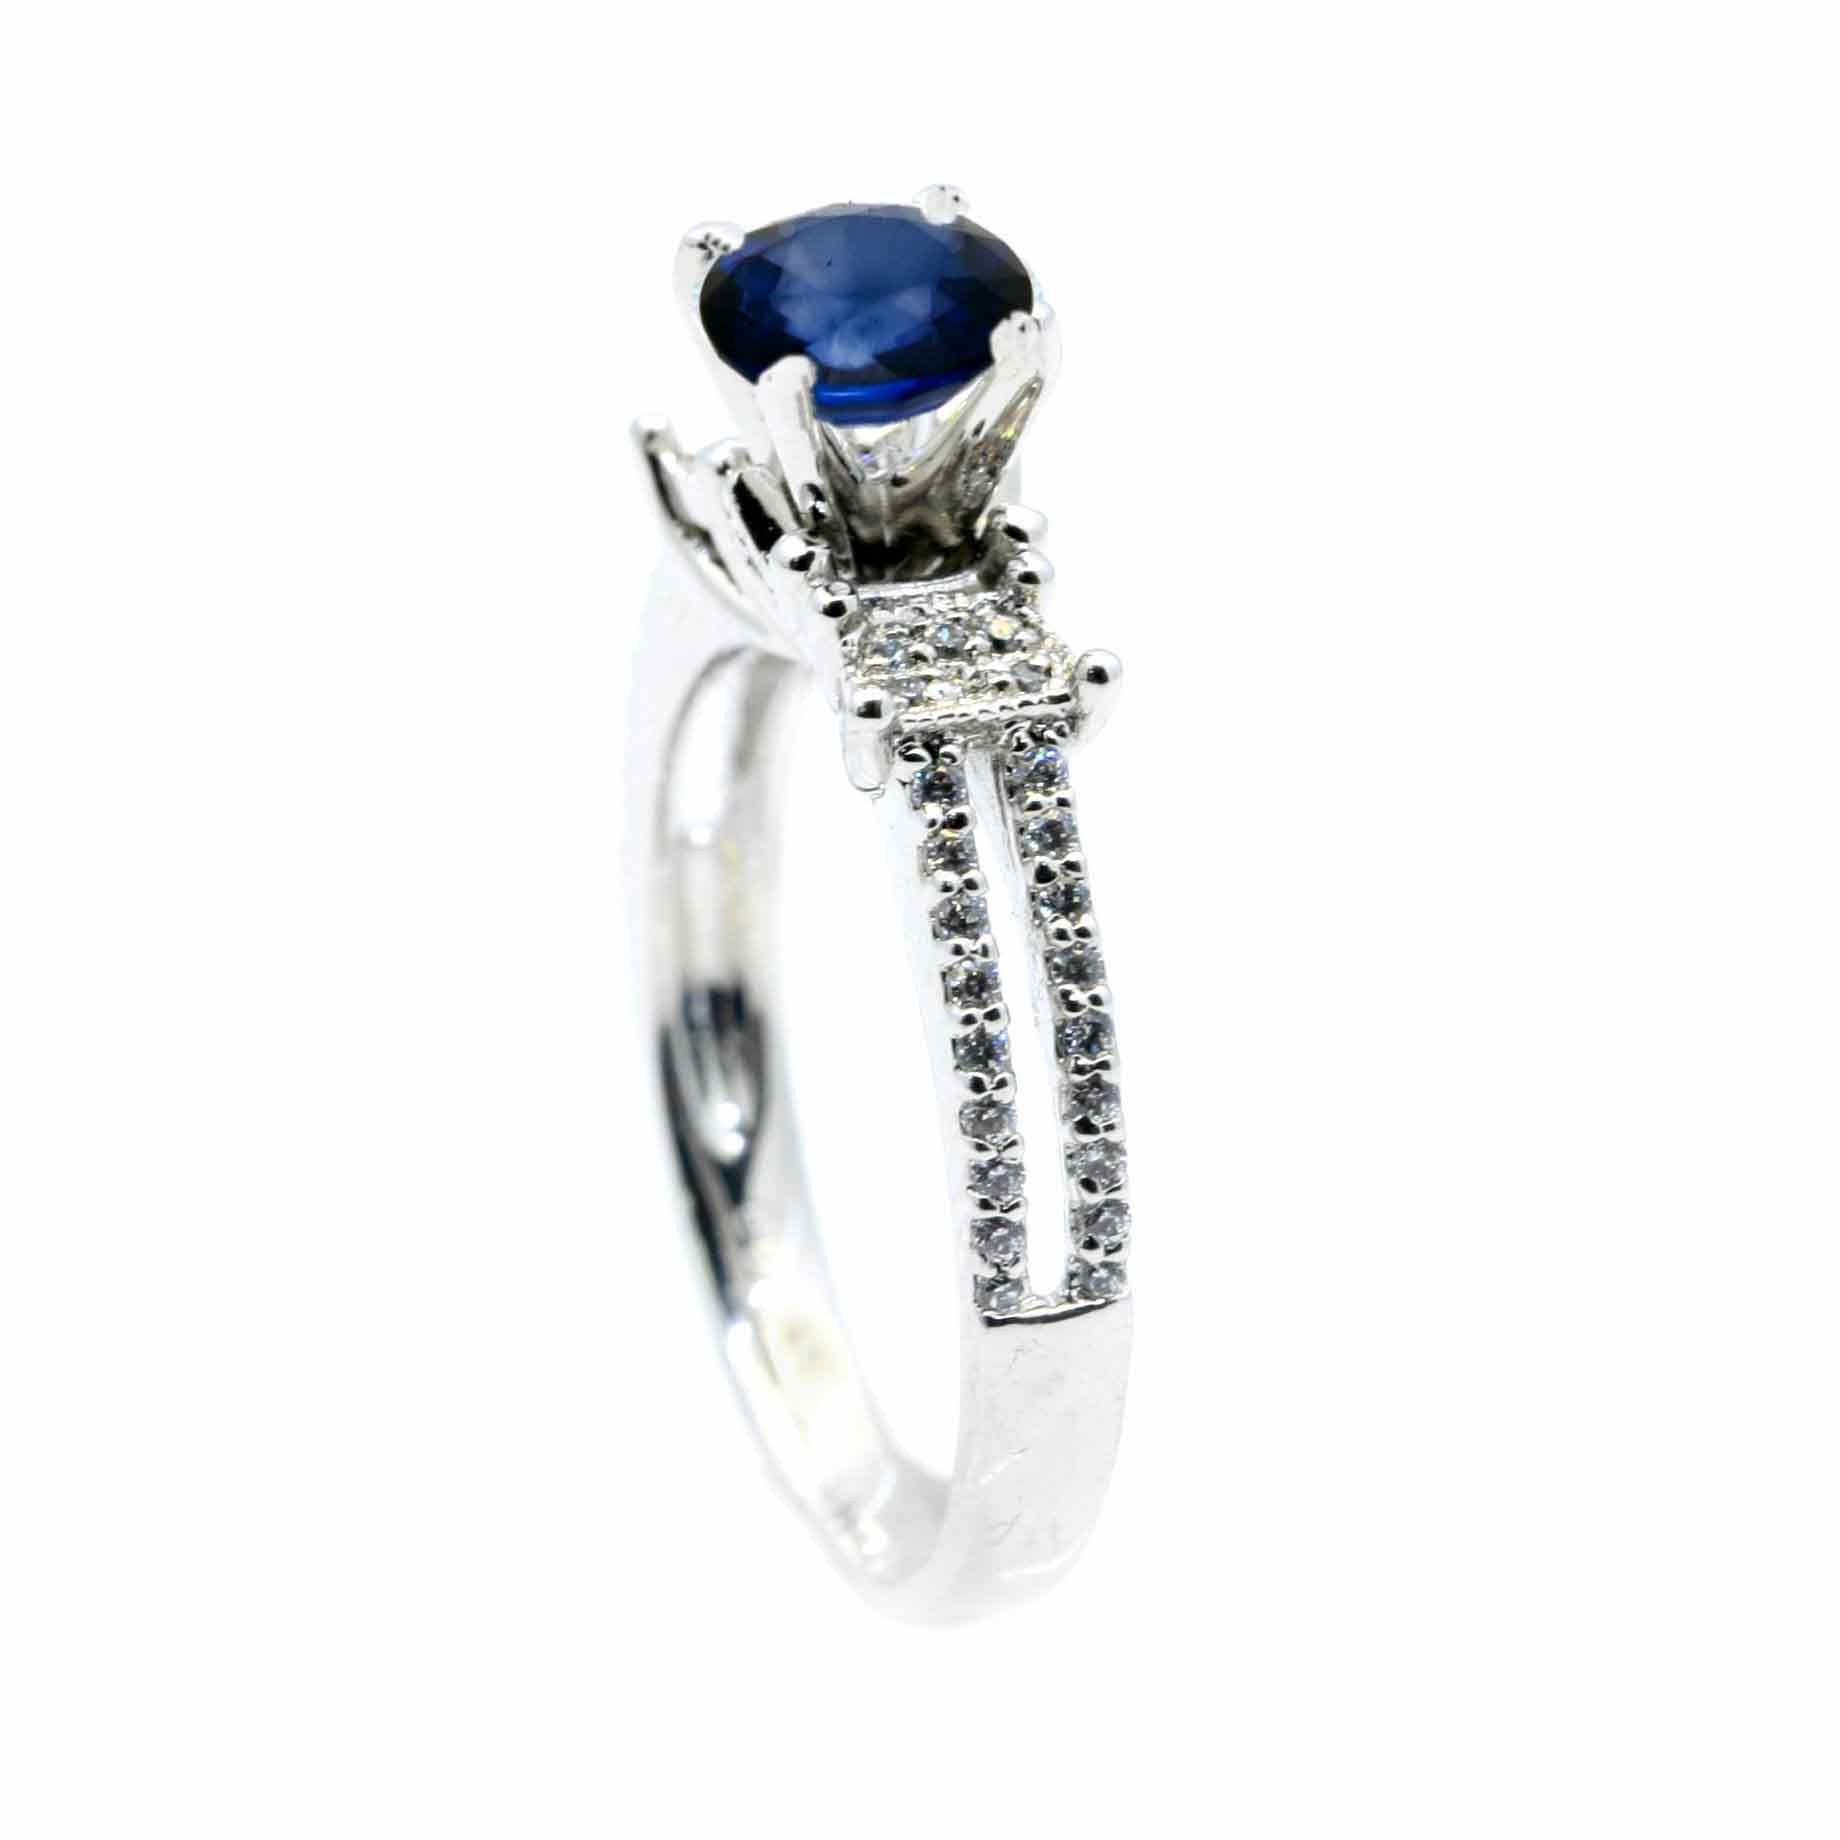 Unique Solitaire Blue Sapphire Gemstone Engagement Ring with 1.4 Carat Sapphire & .25 Carat Diamonds - SP85043